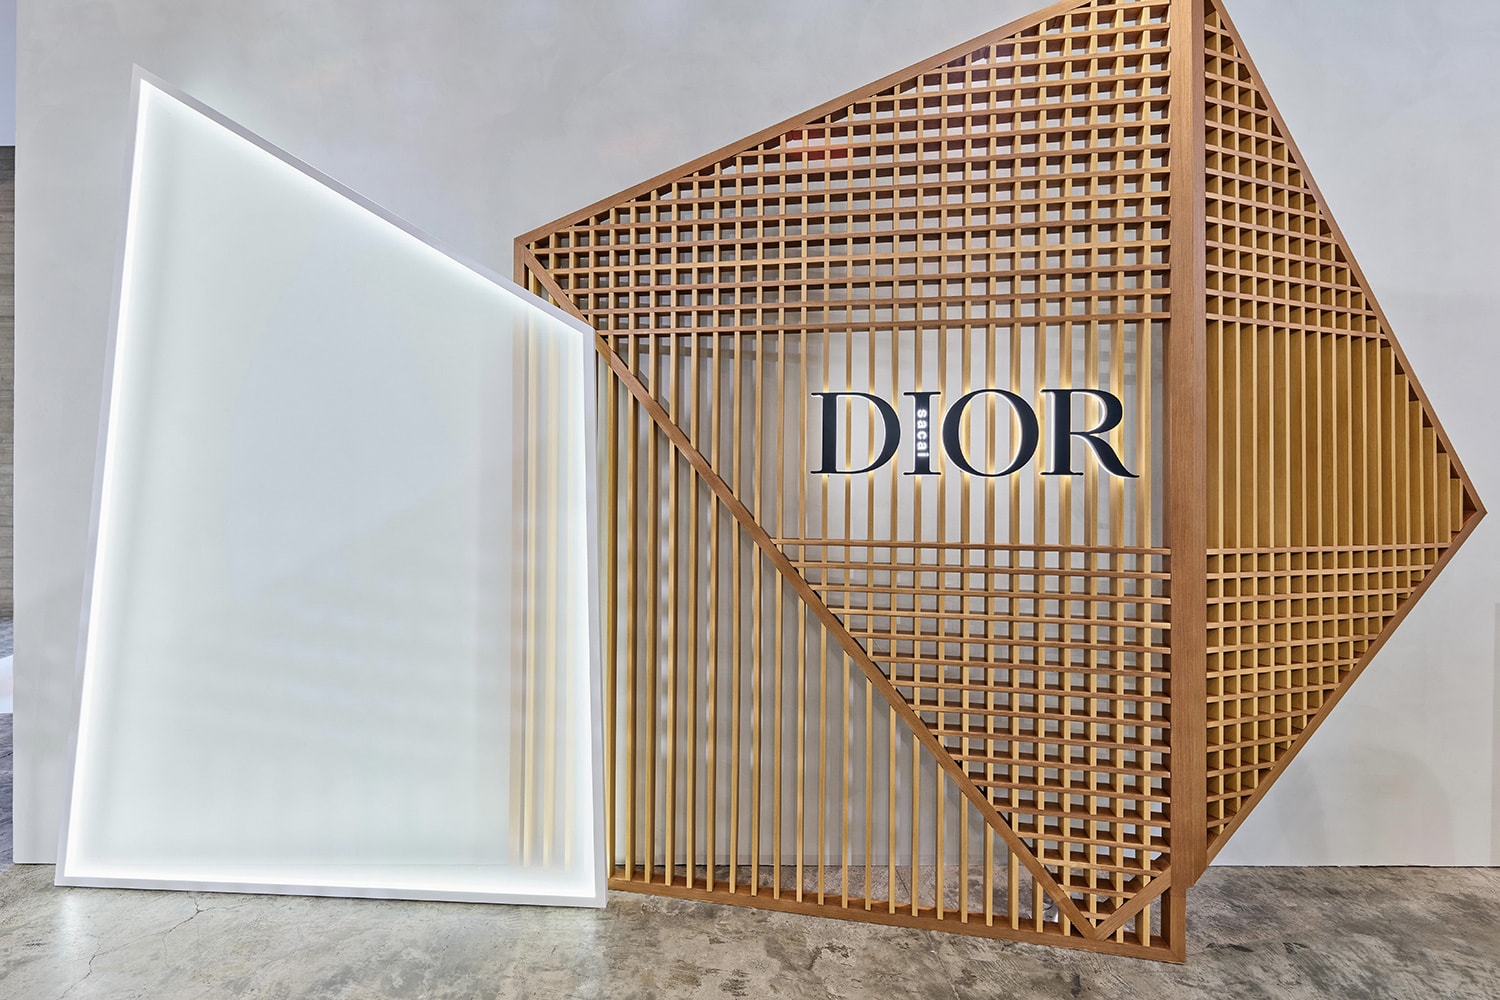 Dior and sacai 男裝期間限定店鋪正式登陸台中